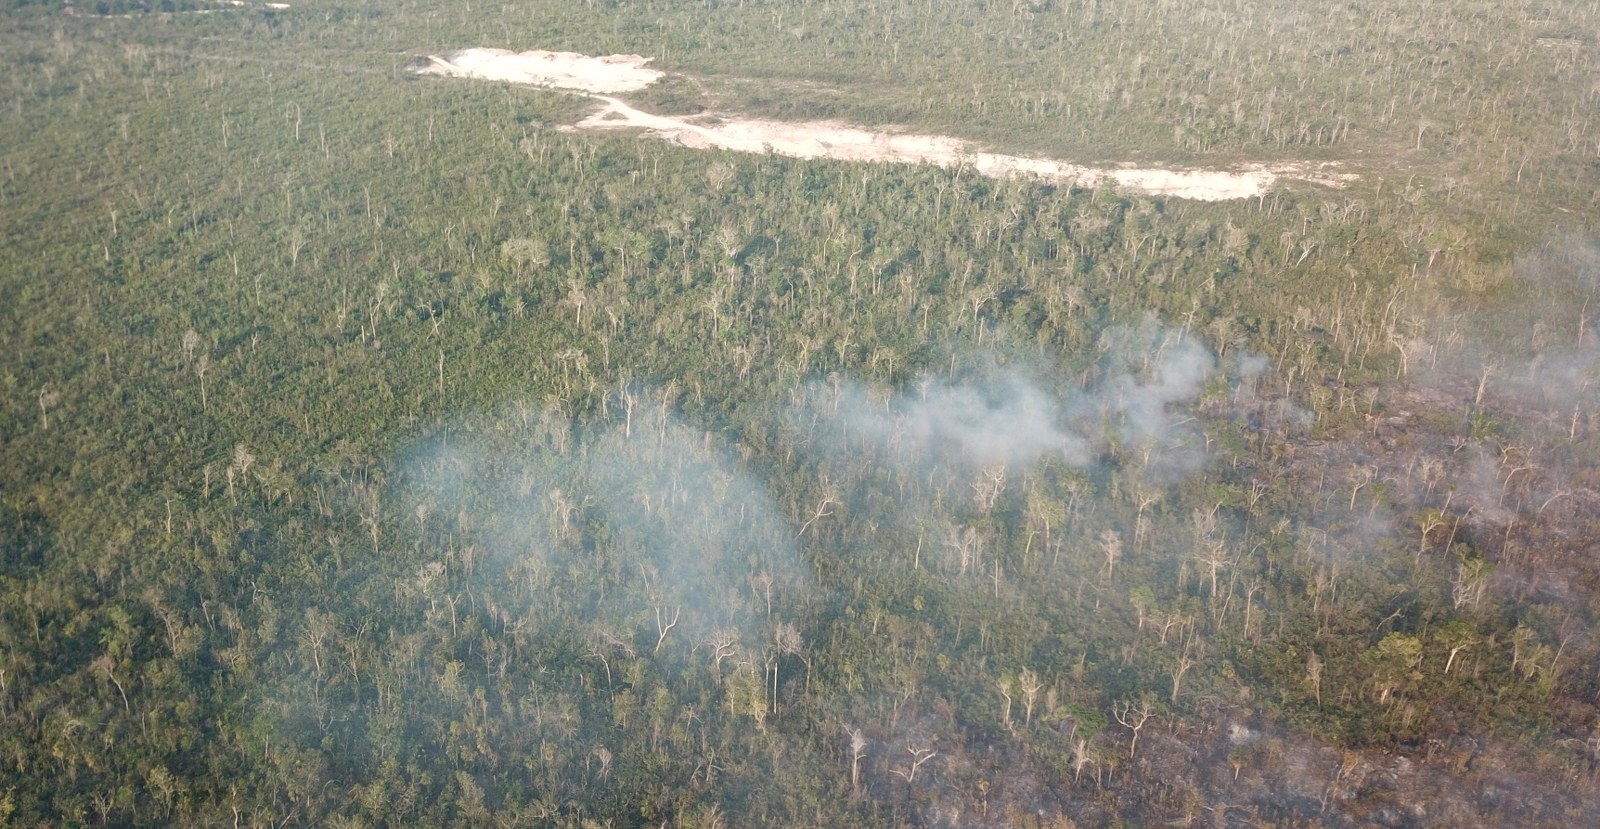 Ambientalistas acusan a cazadores furtivos de provocar incendios forestales en Mahahual